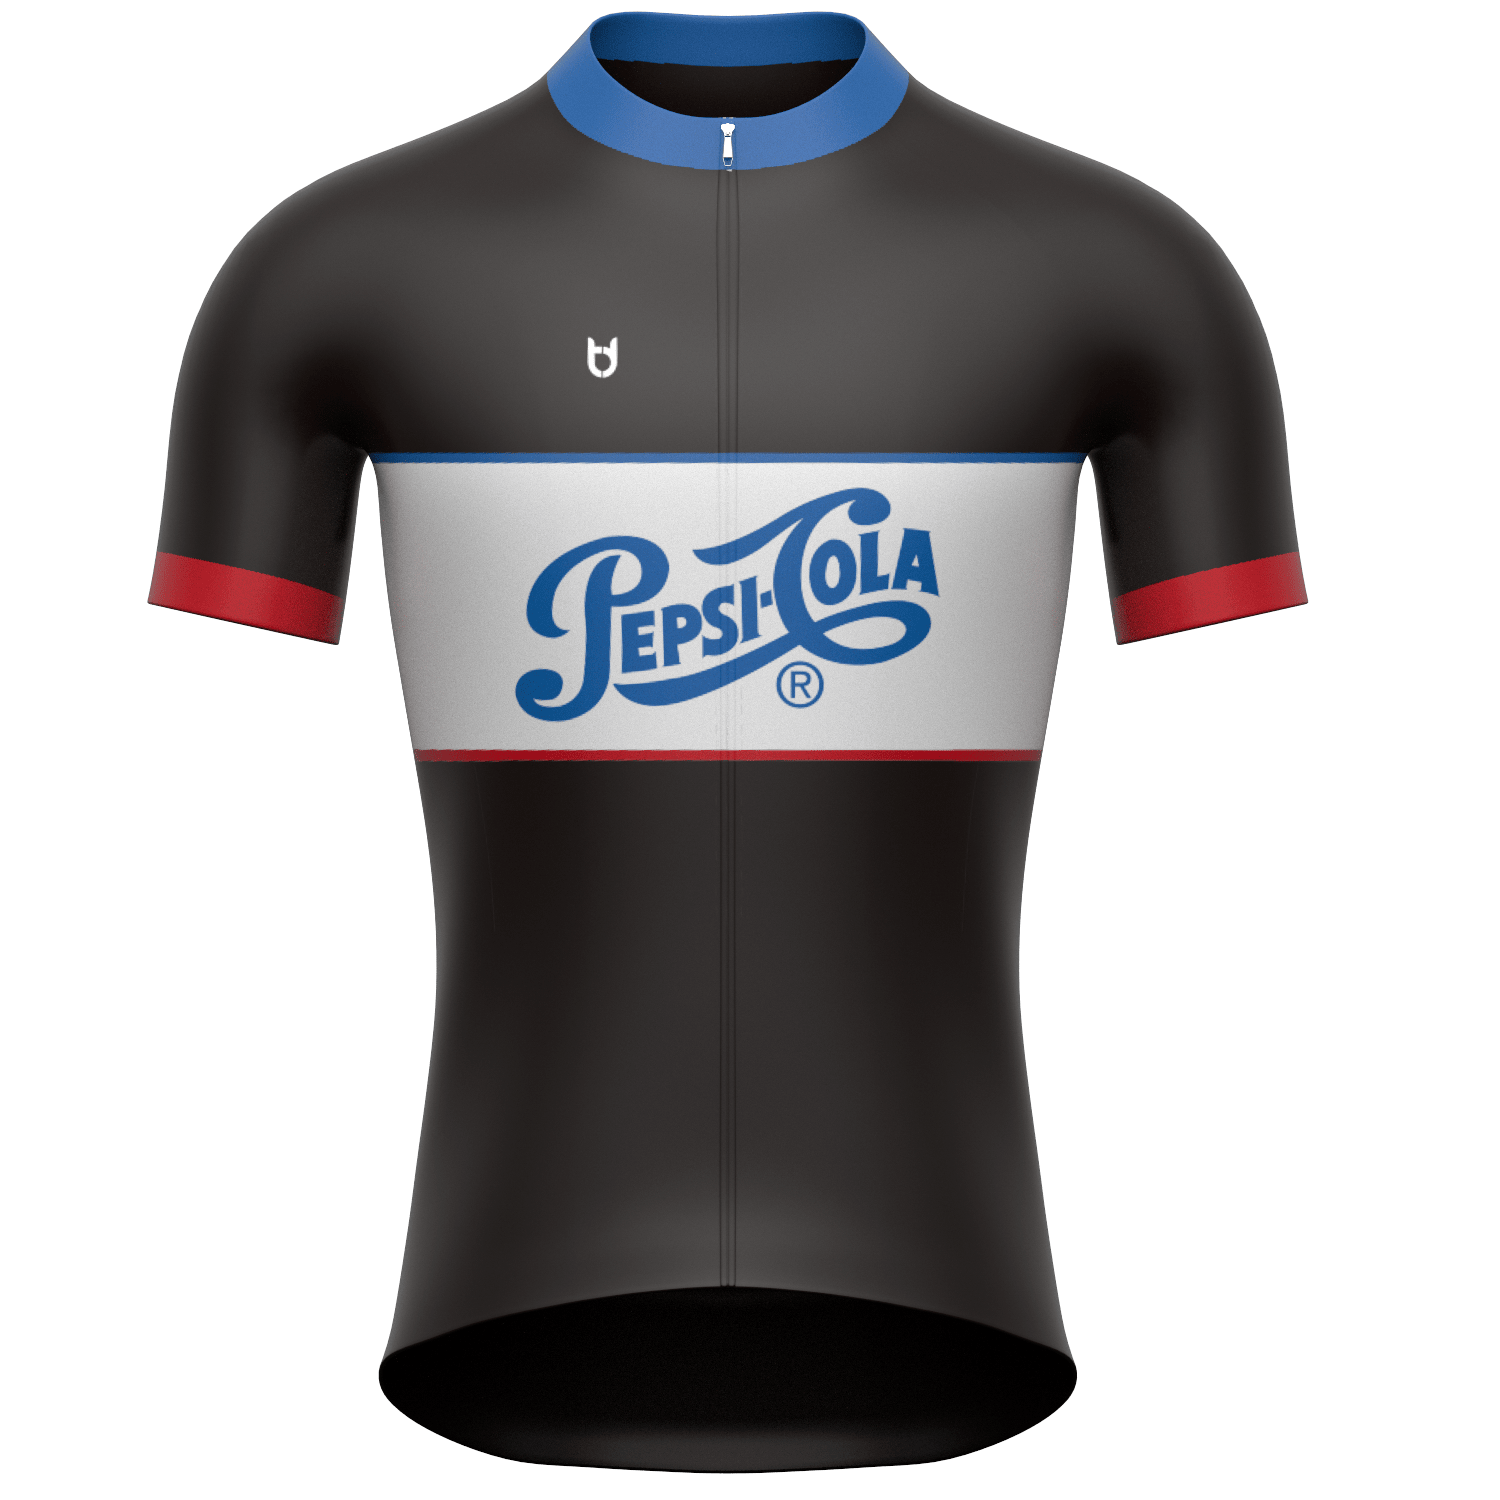 Pepsico sportkleding fietsen hardlopen en triathlon